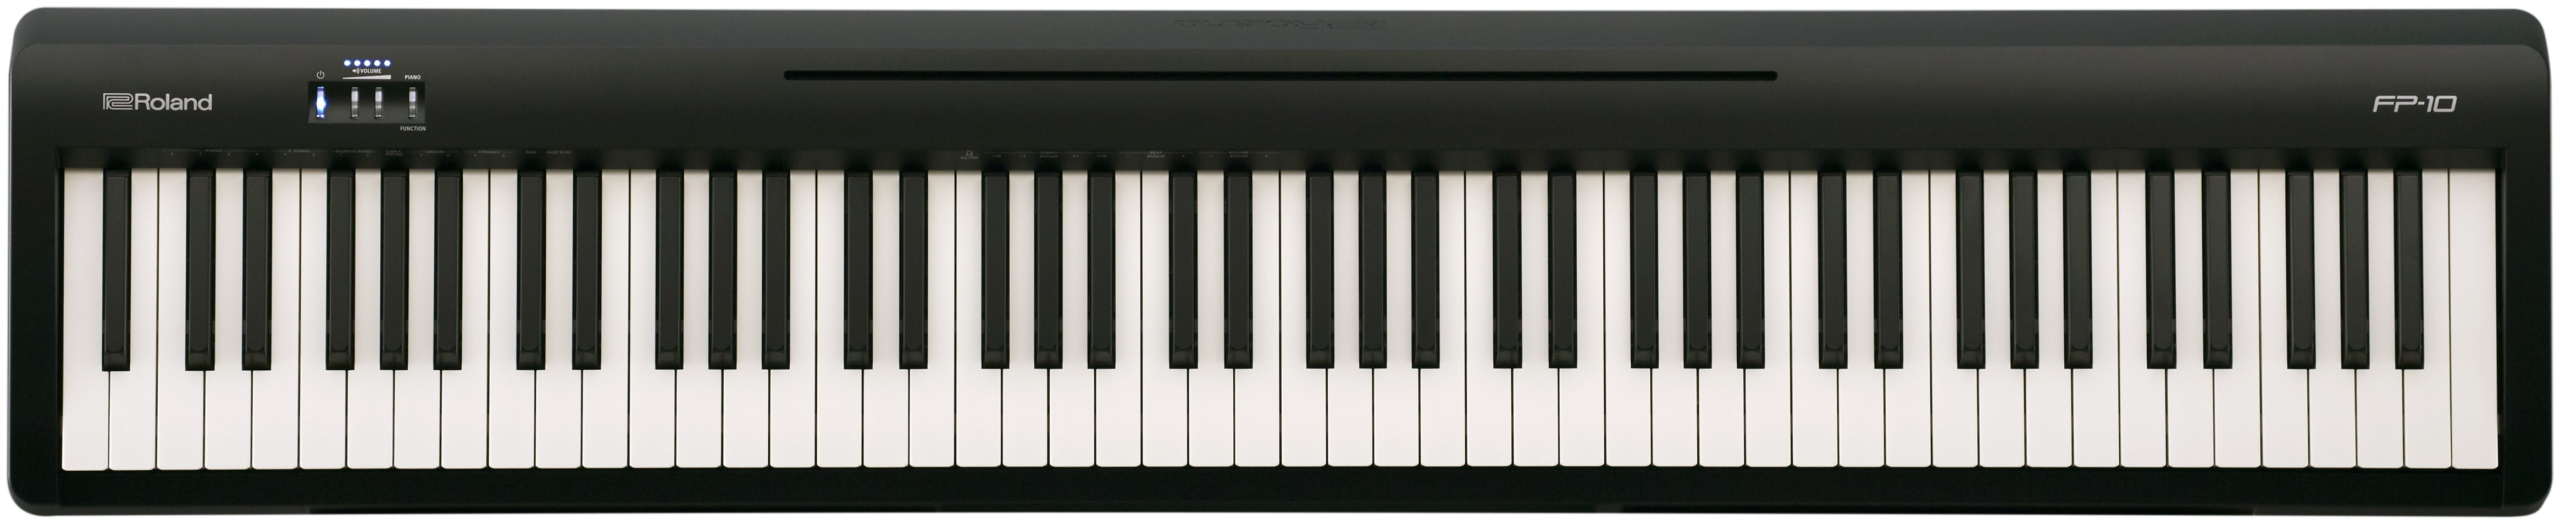 Roland FP-10】ポータブルピアノ購入!ネットの口コミだけで選んだ感想 